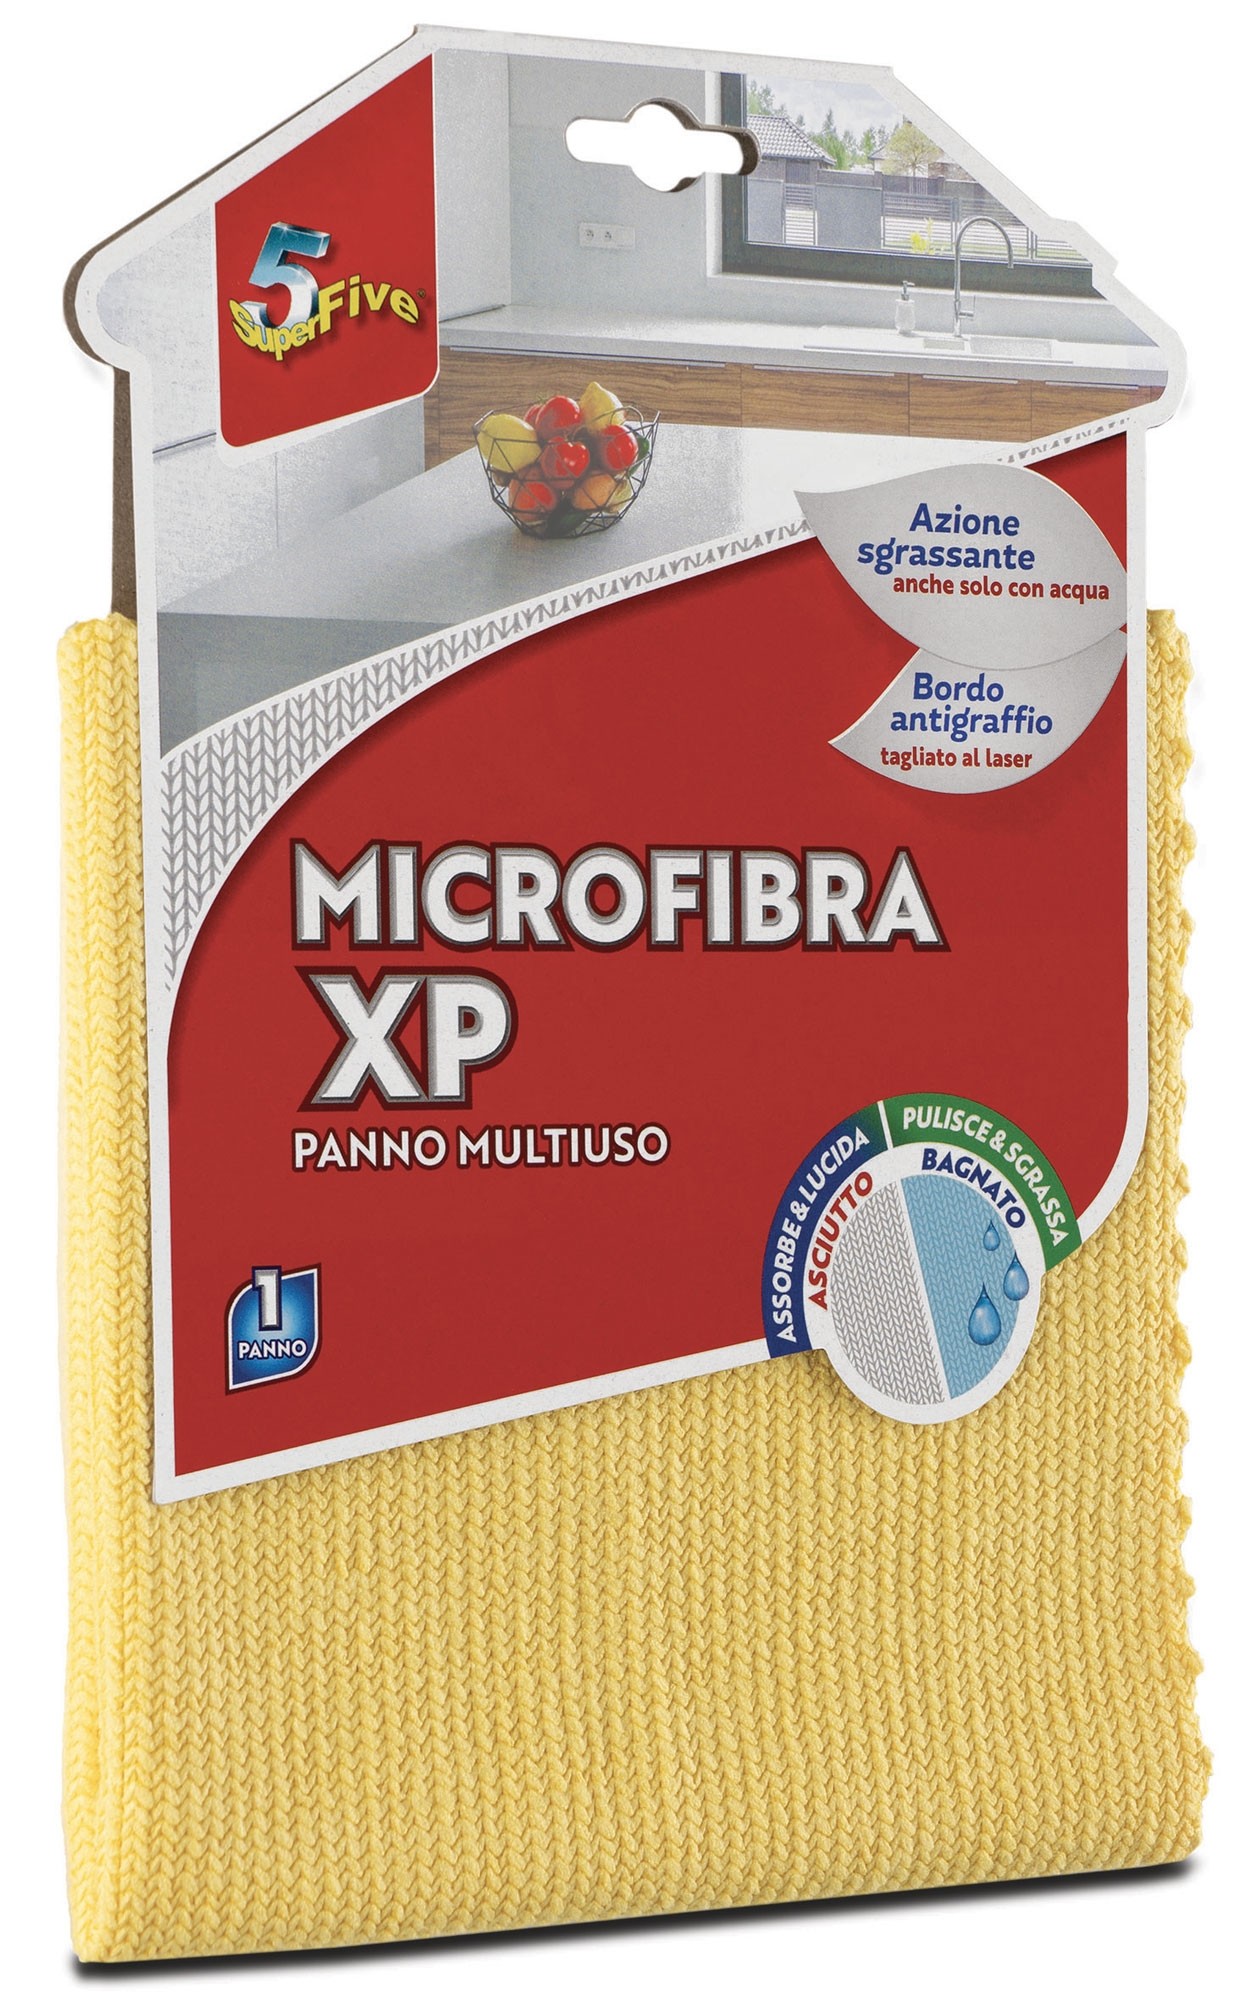 Superfive  Microfibra Xp - Multiuso - Panni - Casa